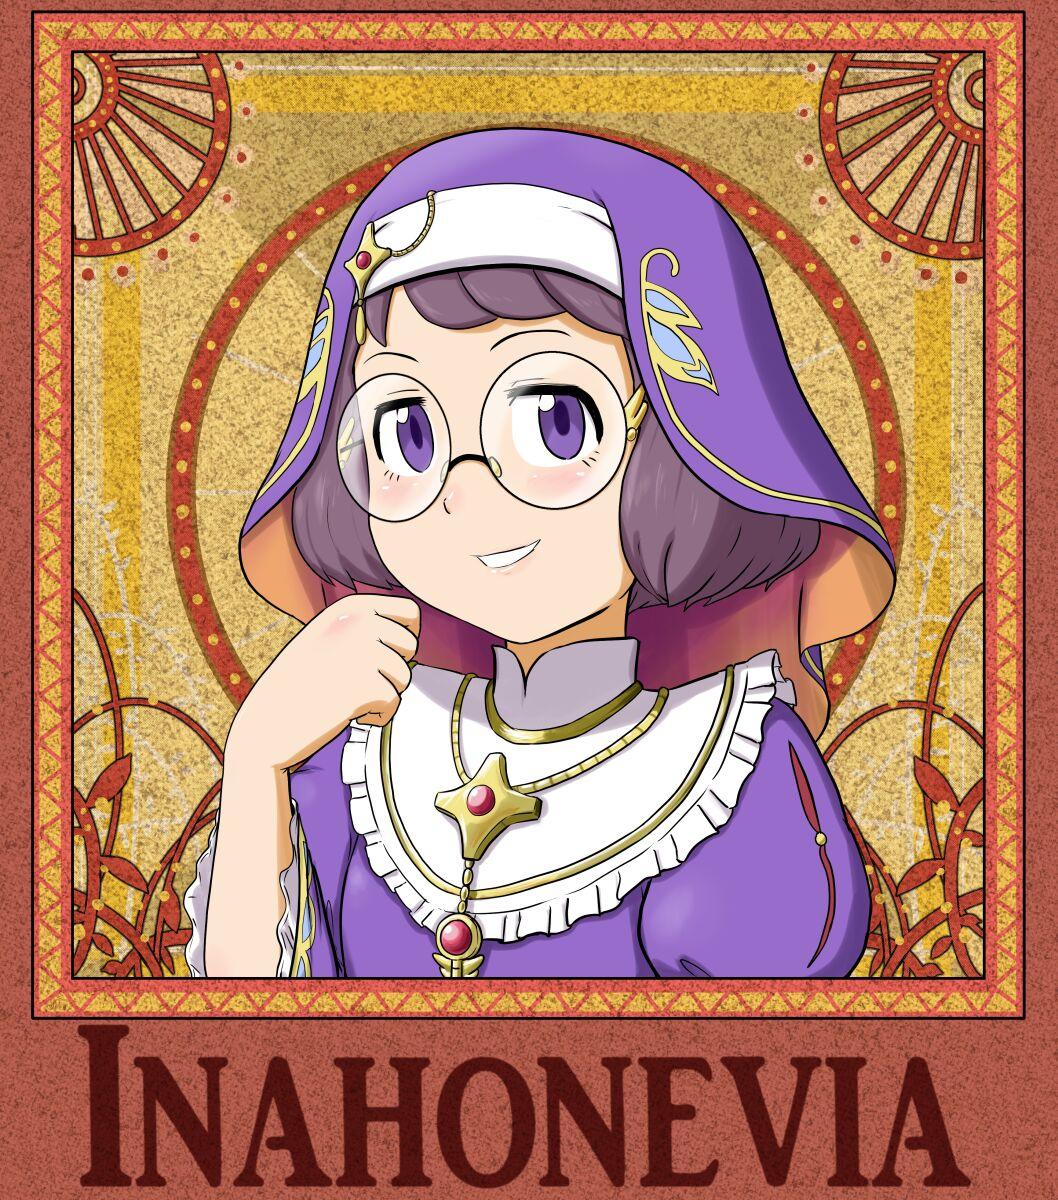 Story of Inahonevia 1